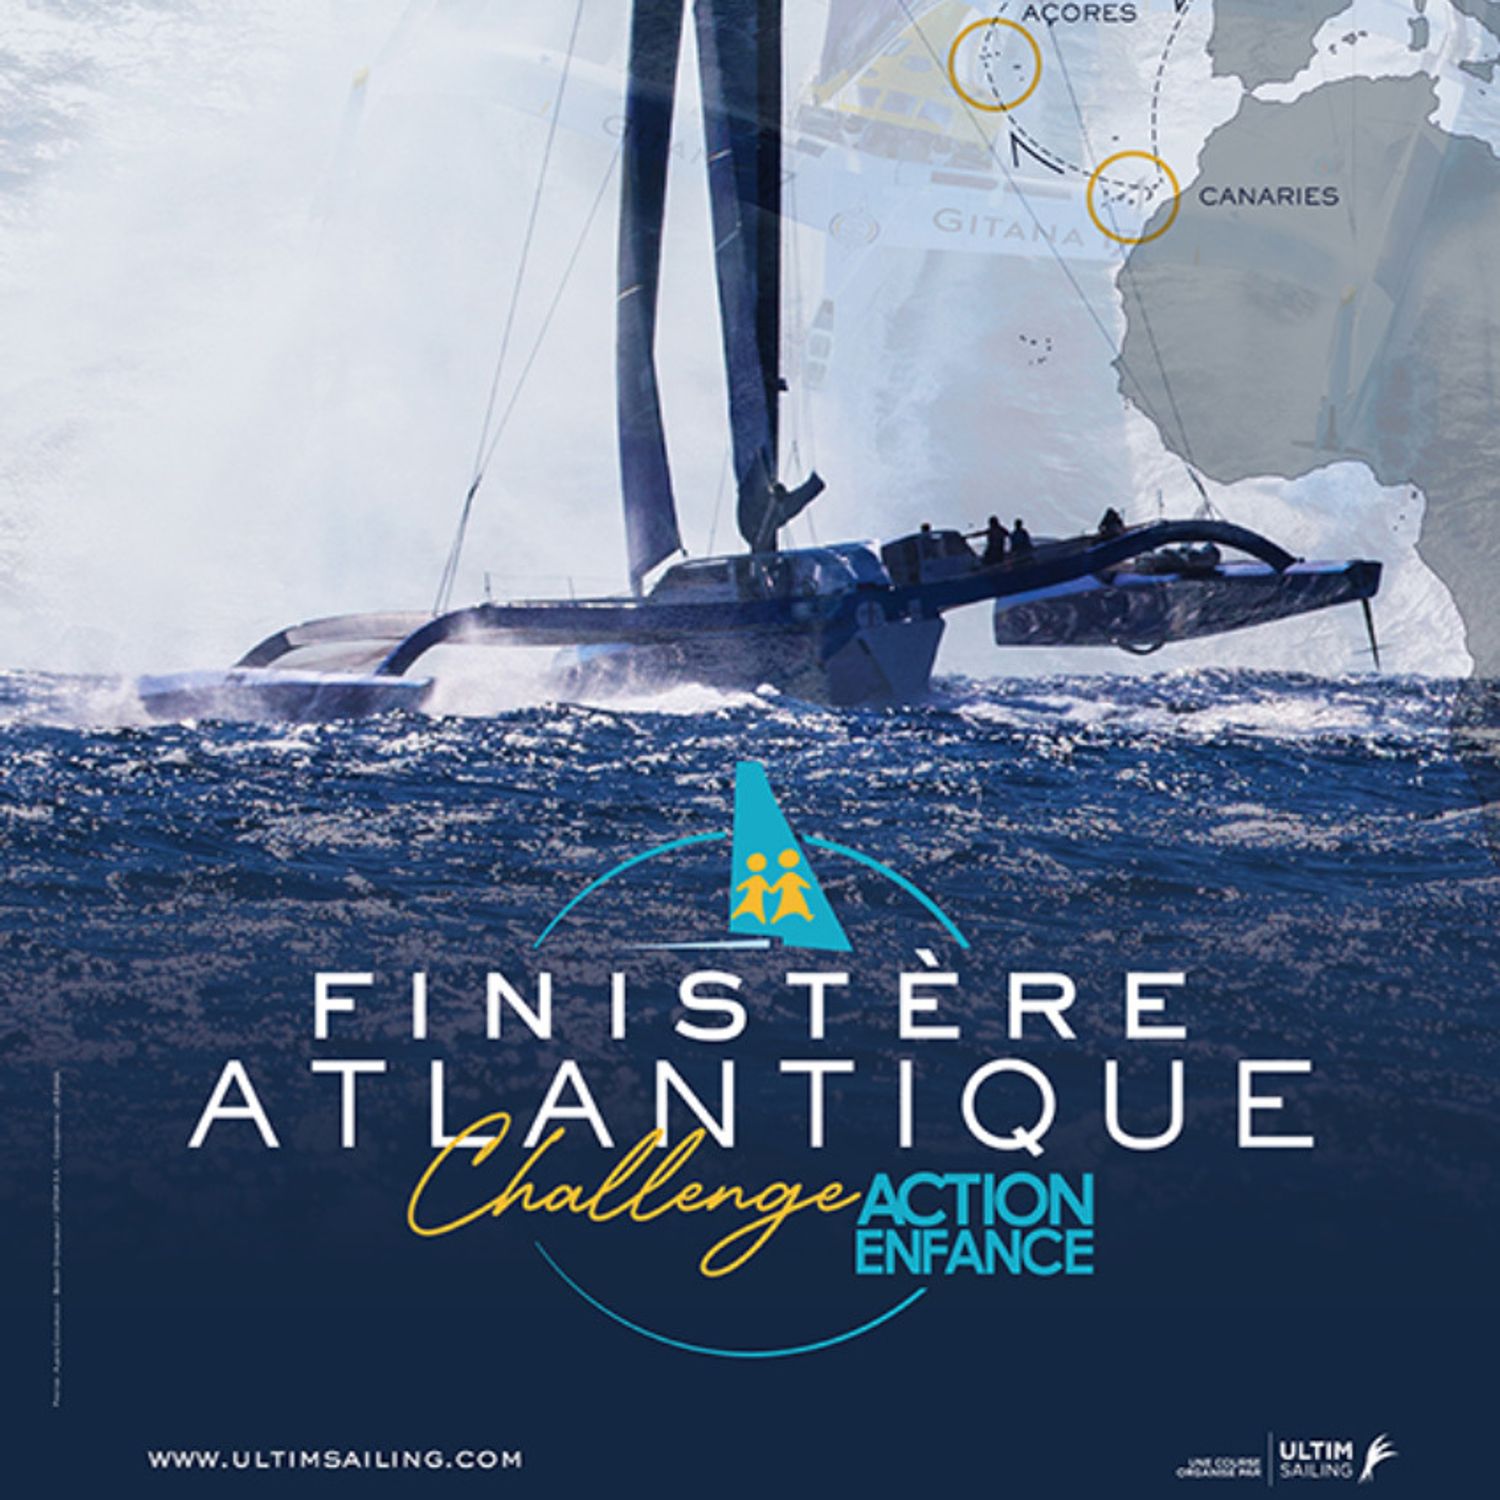 Finistère Atlantique Challenge Action enfance : une course nautique...